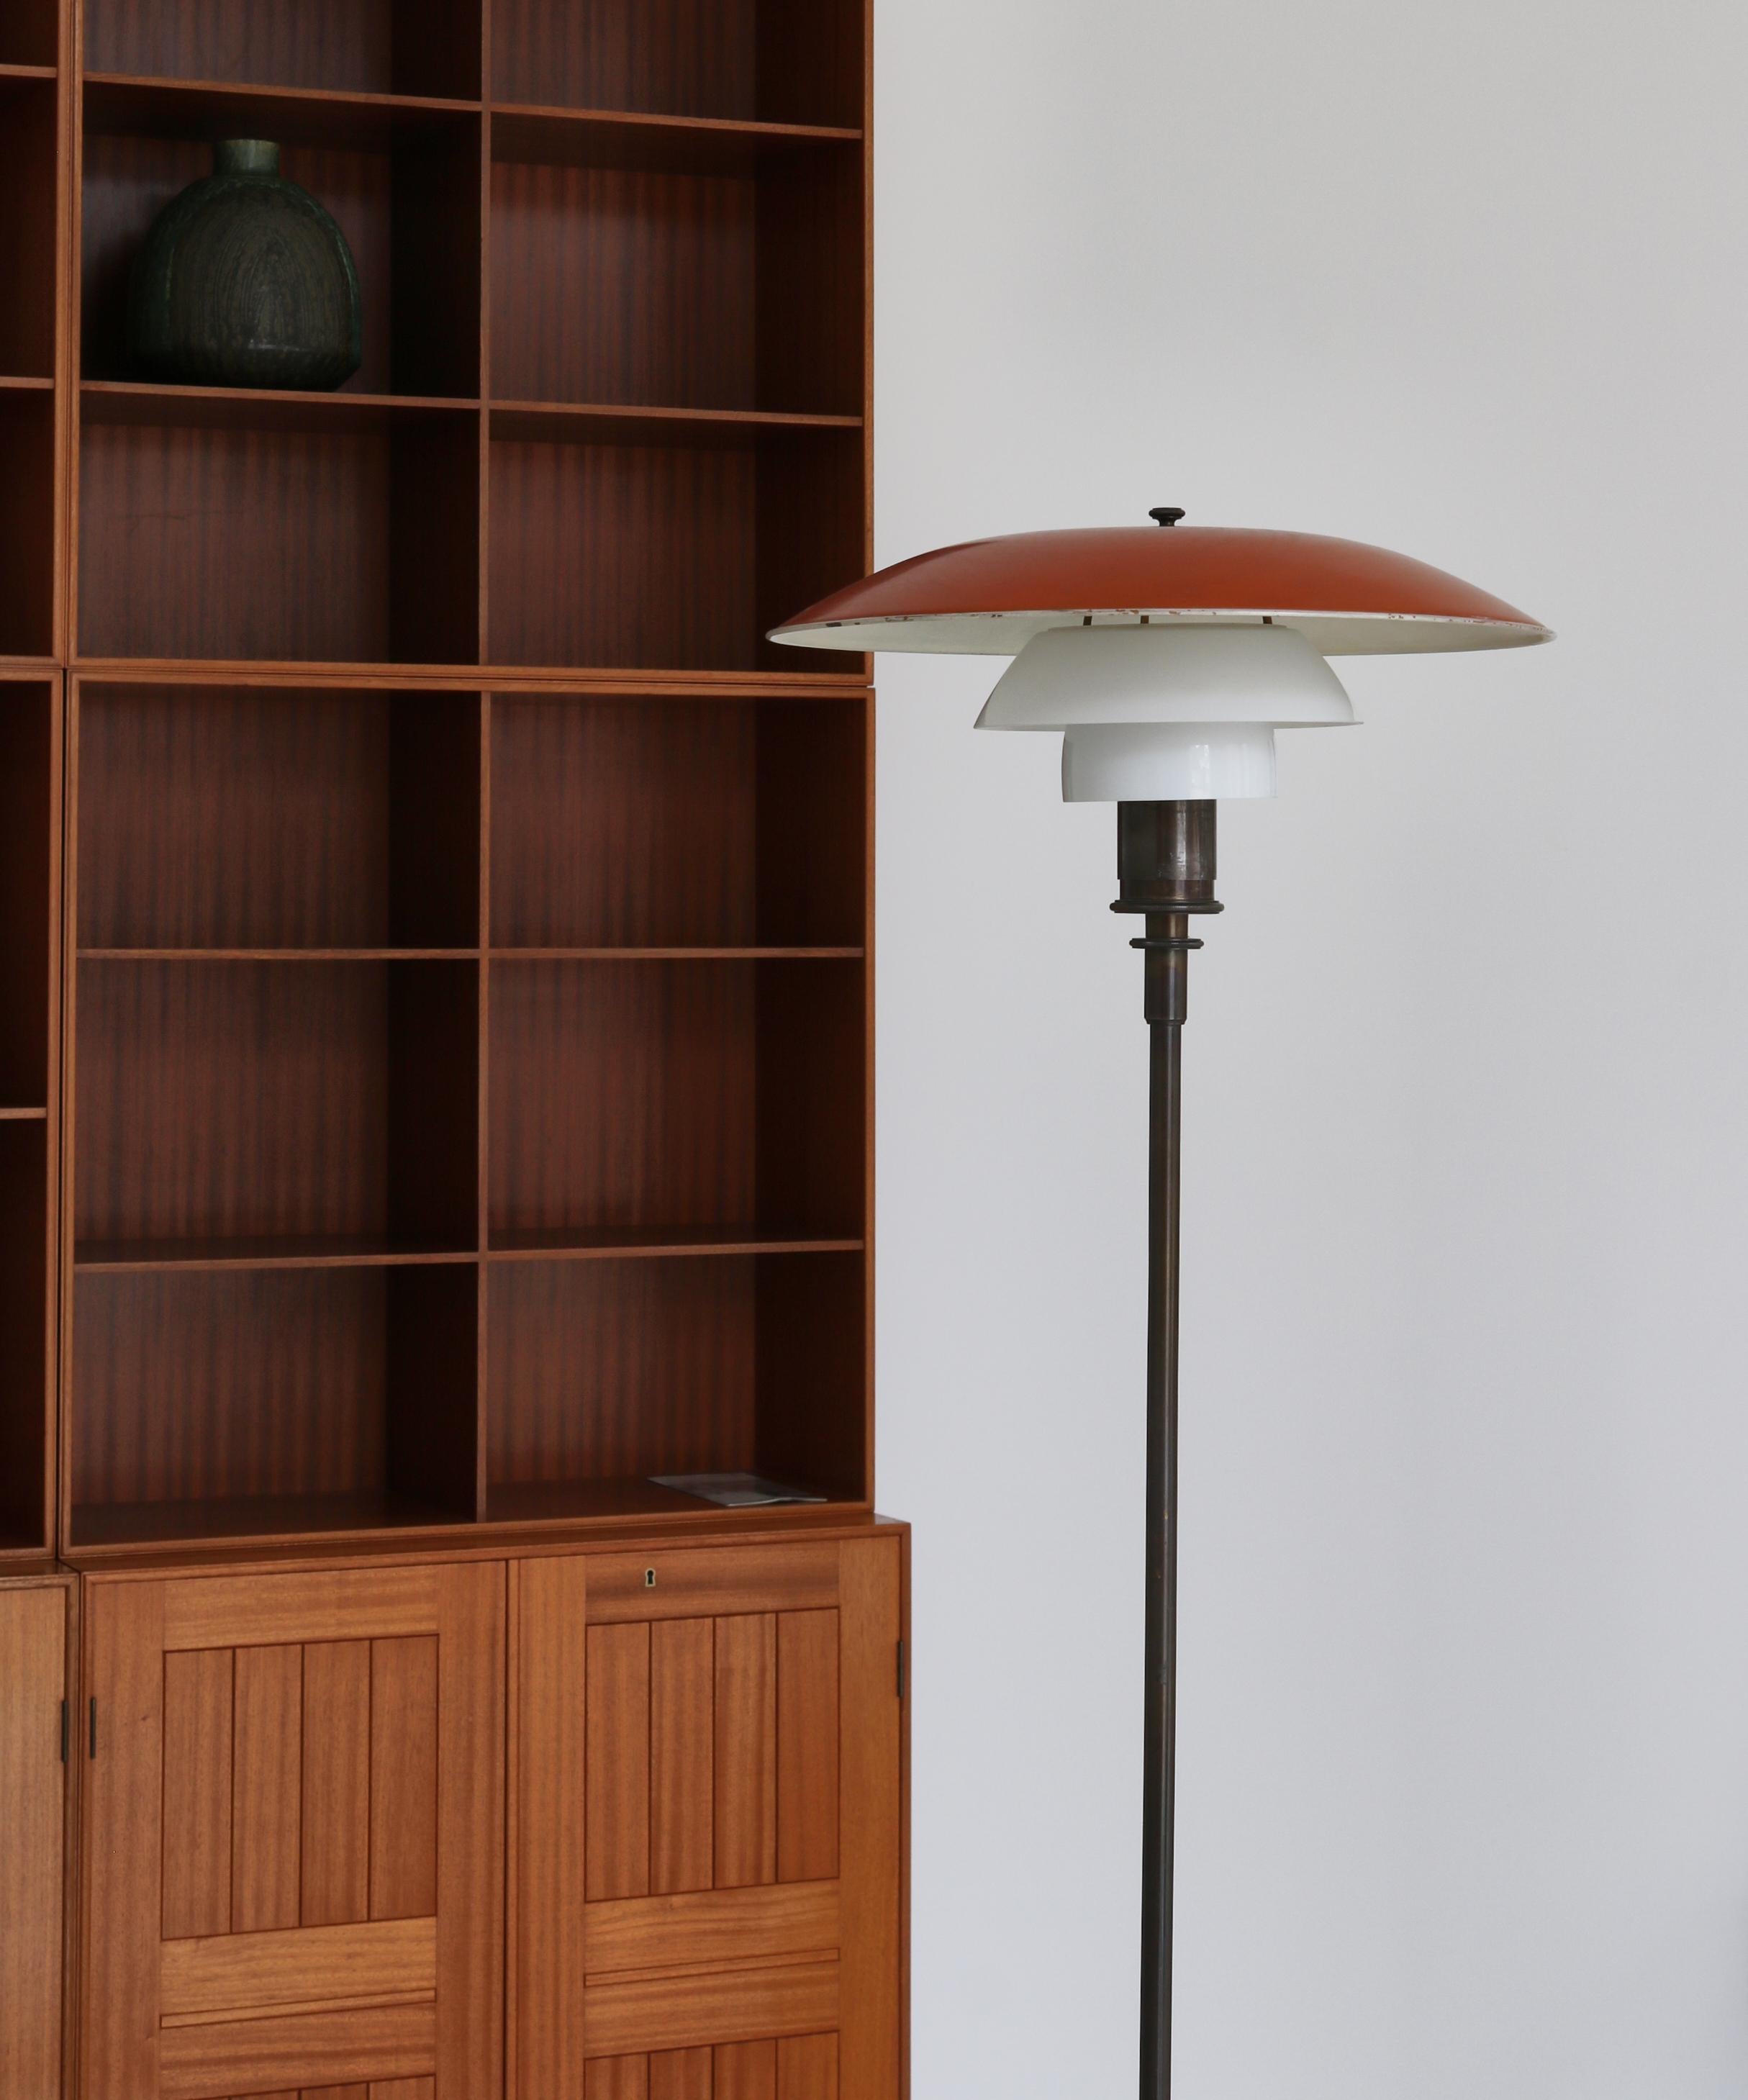 Important lampadaire PH 4/3 de Poul Henningsen (PH) fabriqué chez Louis Poulsen, à Copenhague, entre 1926 et 1928. La base de la lampe est en bronze patiné et l'abat-jour supérieur est en bronze laqué rouge et blanc. Les écrans du milieu et du bas